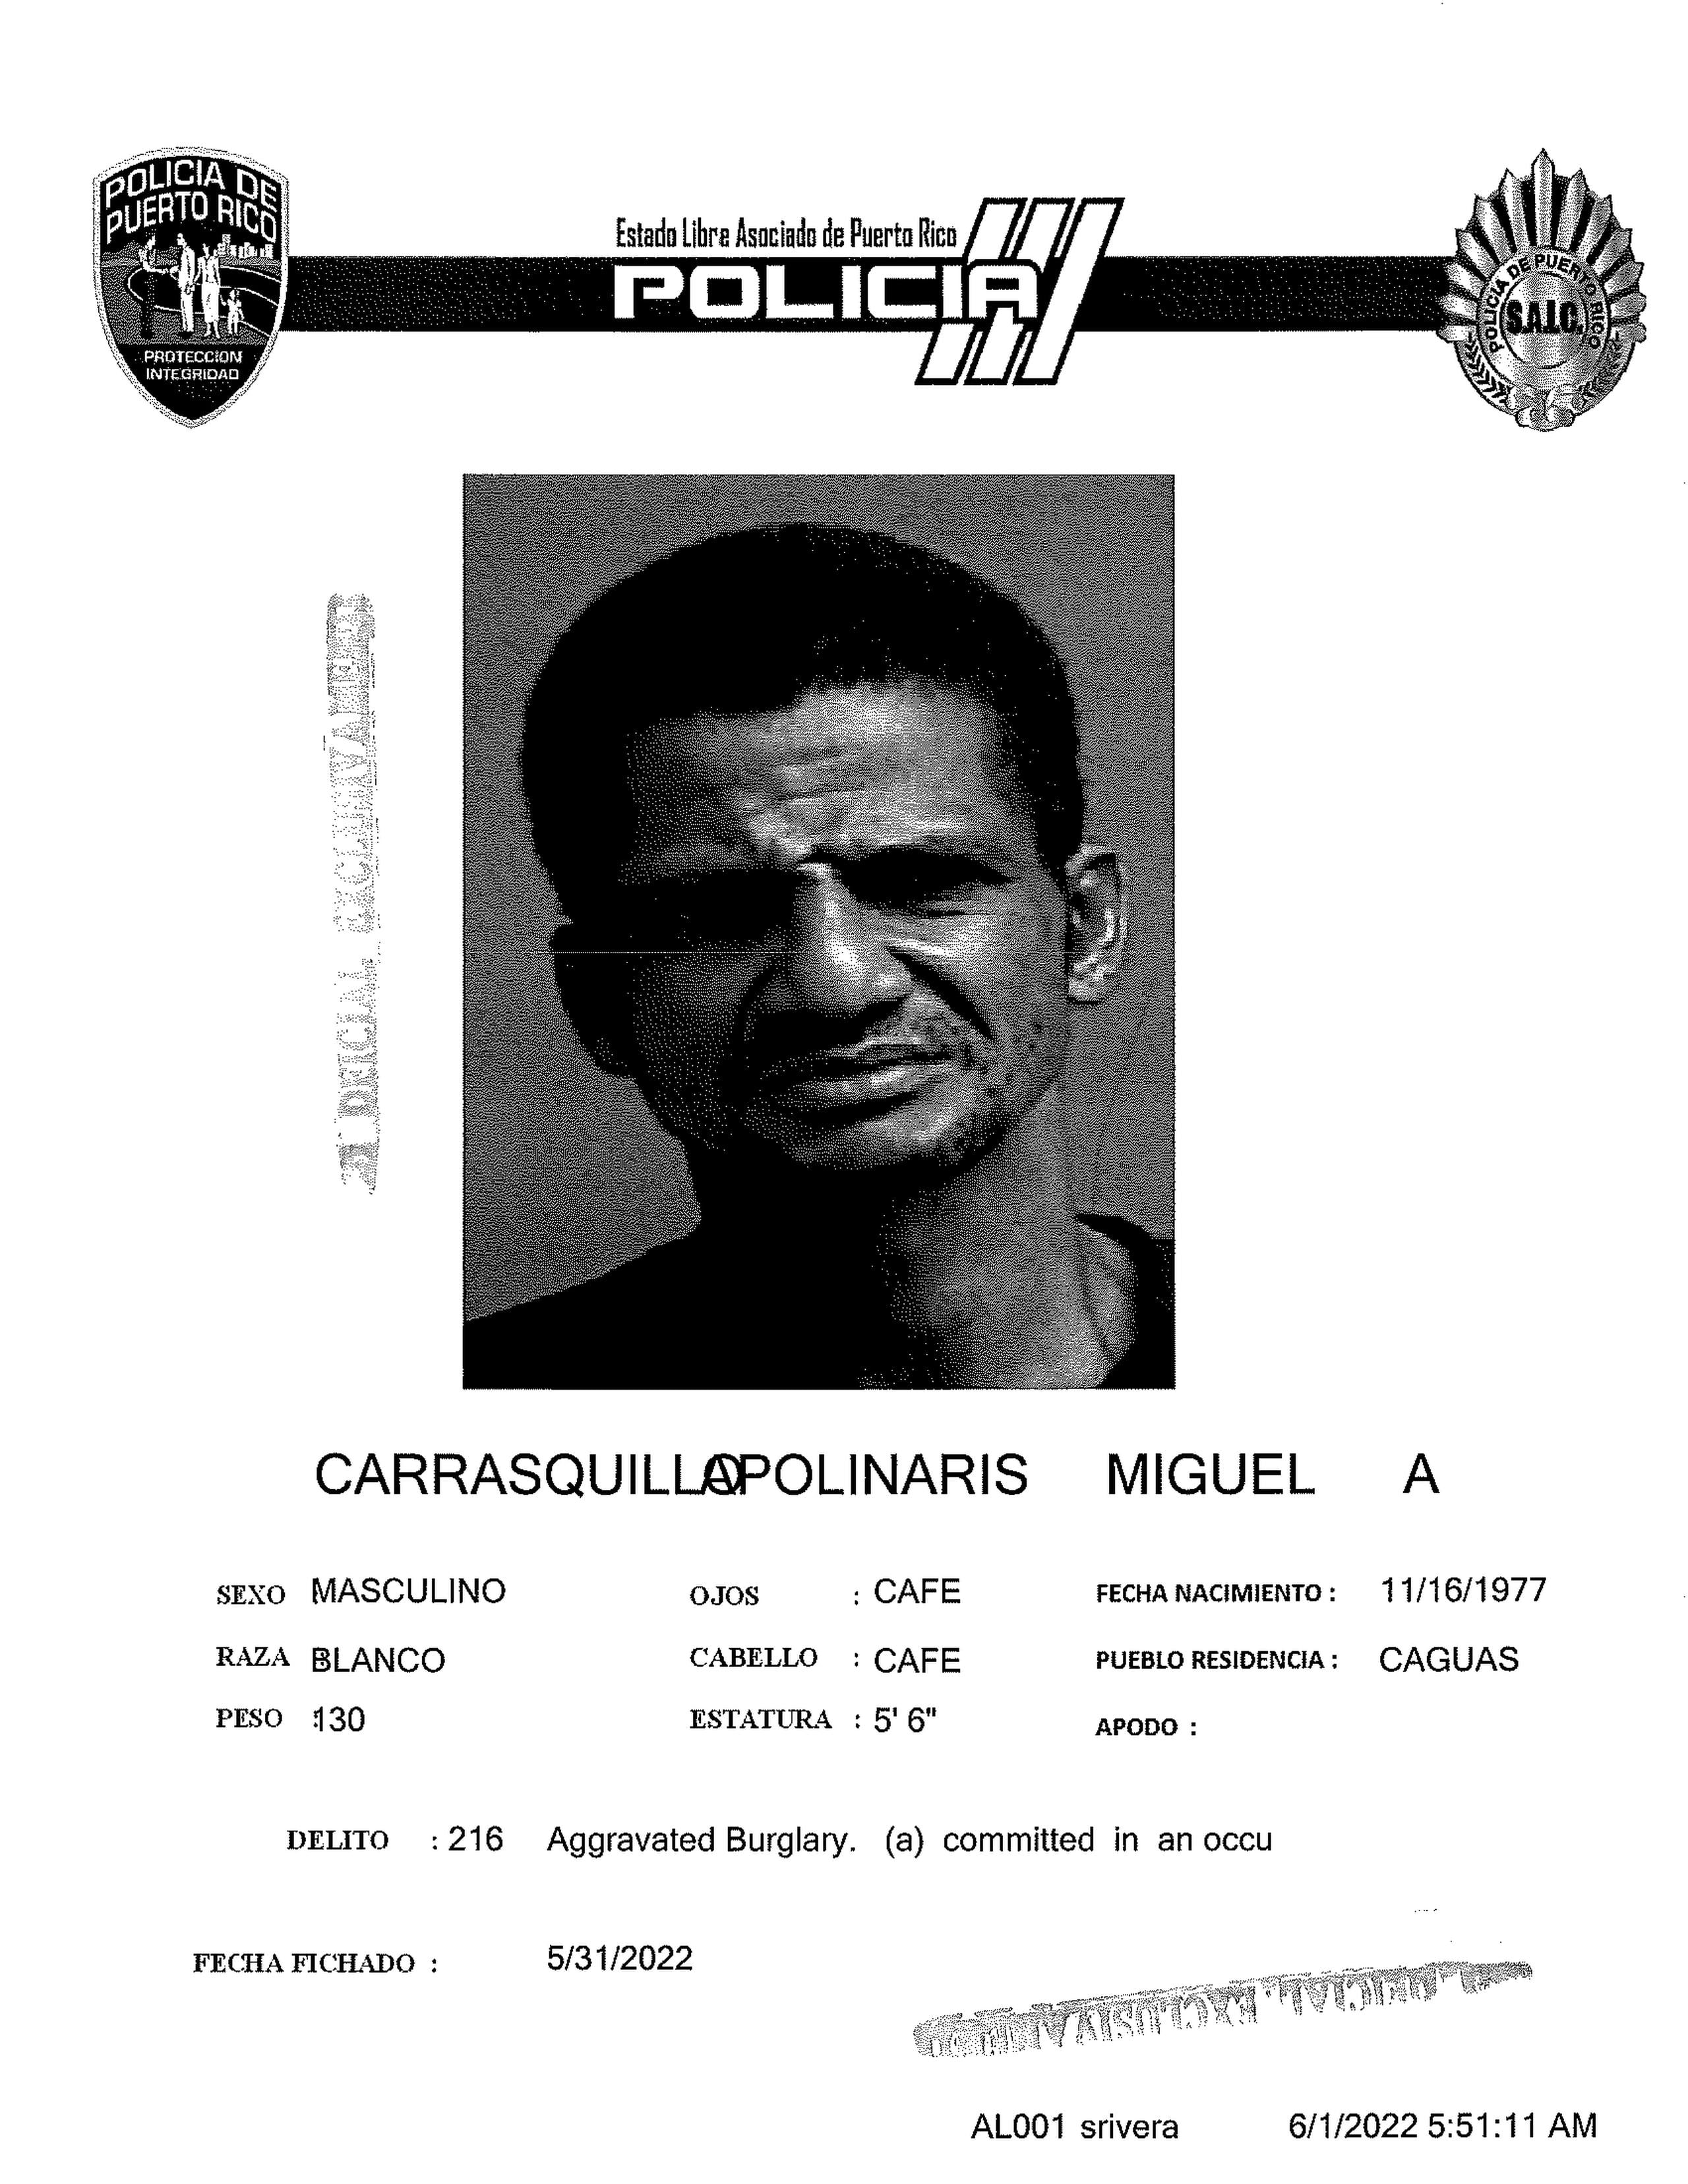 Miguel A. Carrasquillo Apolinaris, quien figuraba entre los más buscados de la zona policíaca de Caguas, fue capturado el 31 de mayo de 2022.